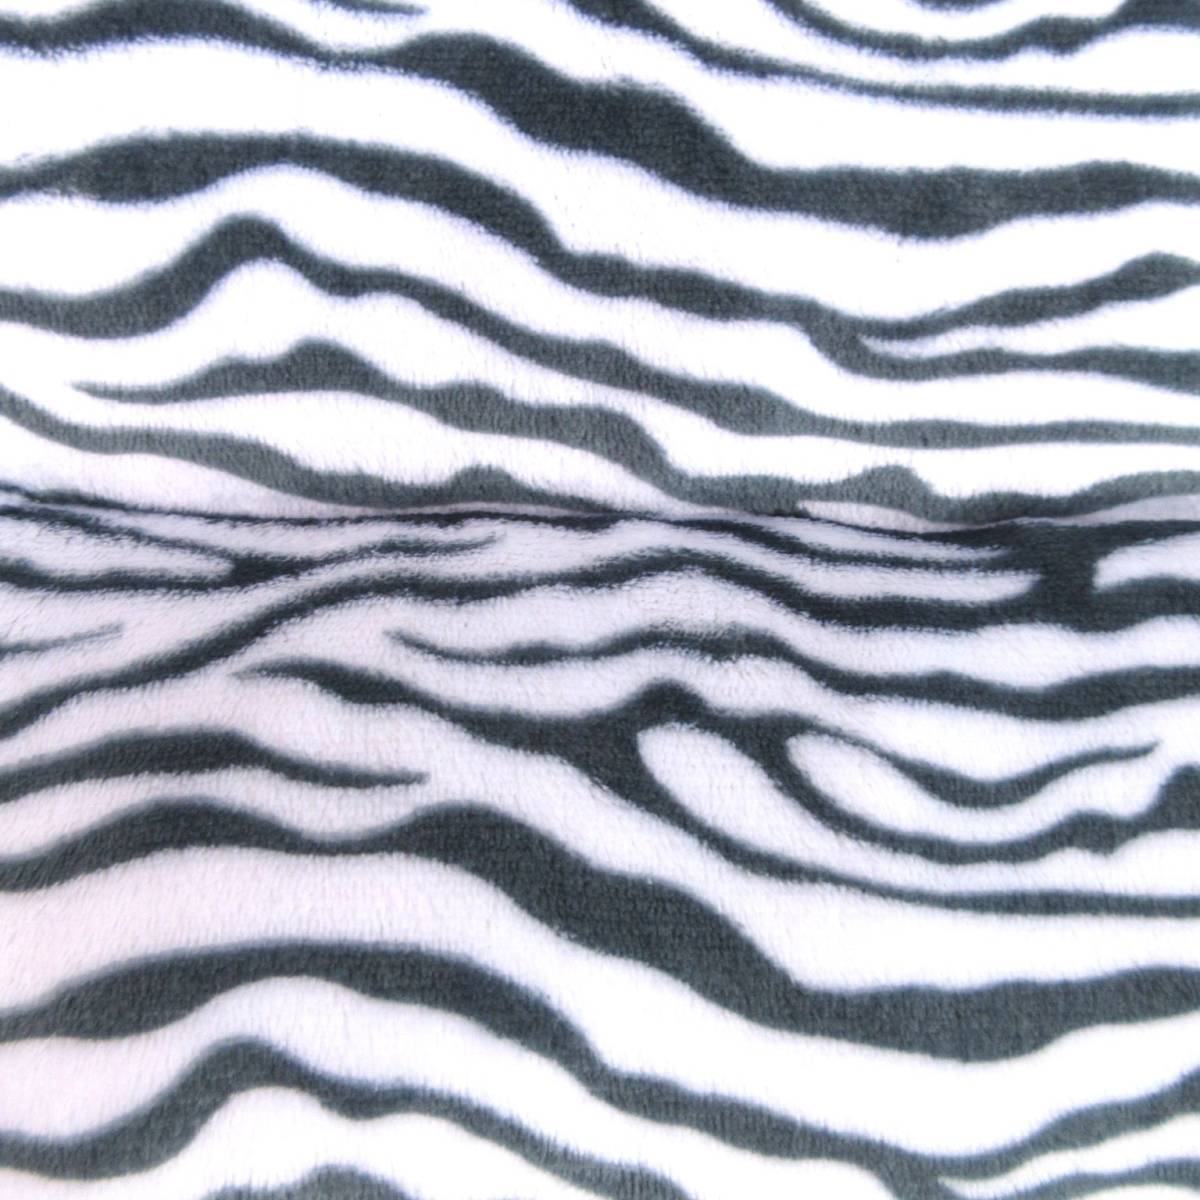  новый товар * бесплатная доставка [L размер ] фланель квадратное домашнее животное bed * домашнее животное диван * домашнее животное house * домашнее животное коврик # Zebra рисунок серый 